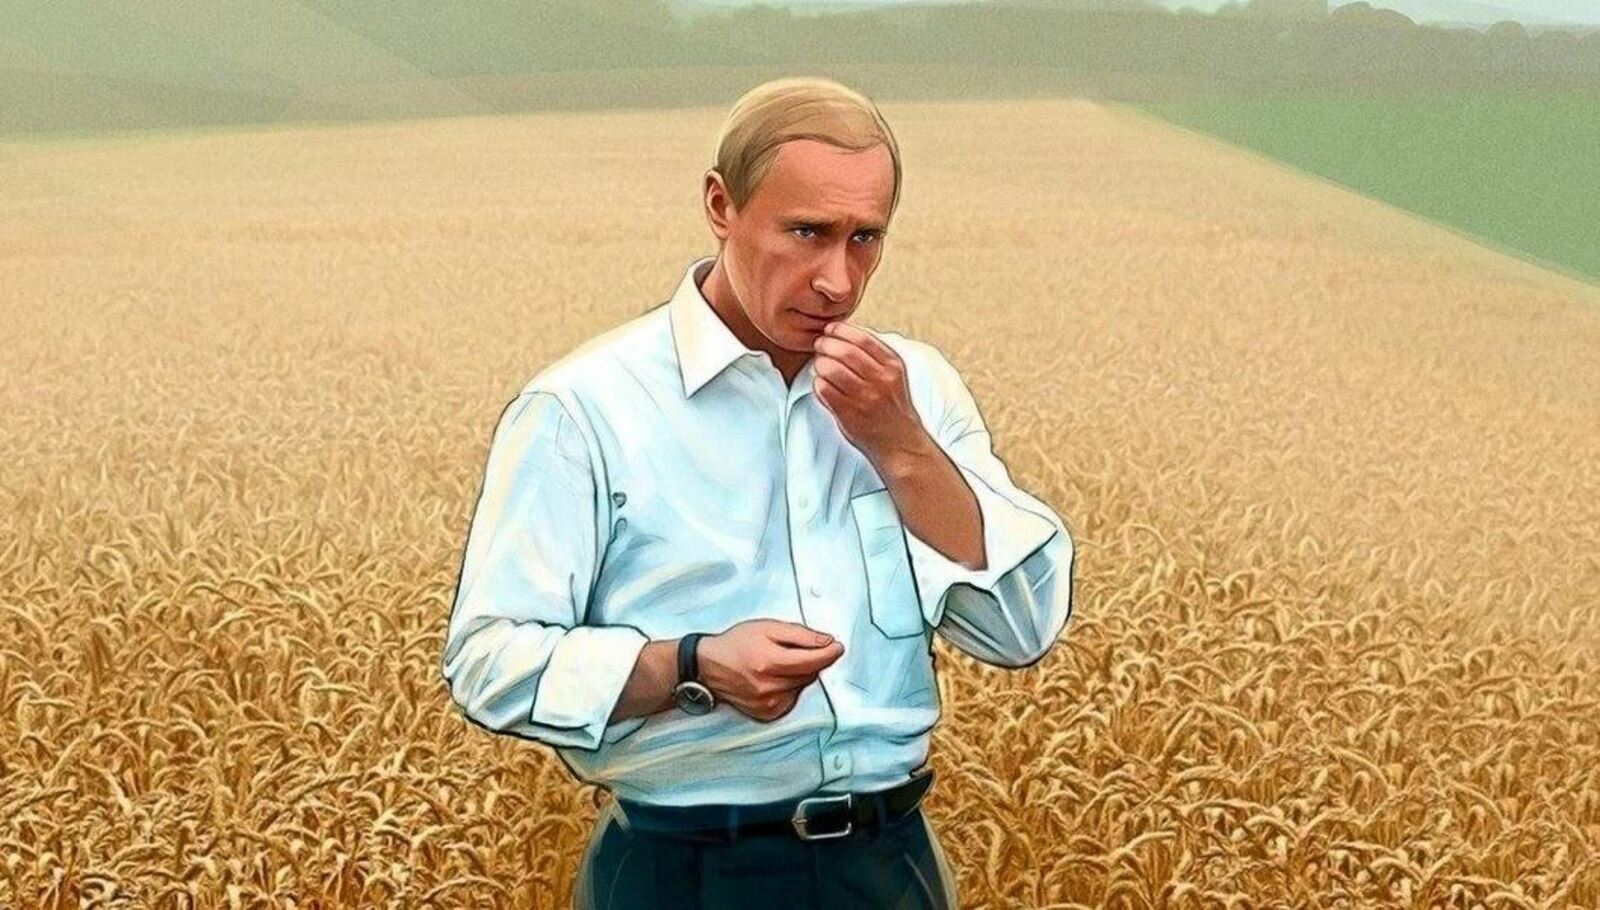 Путин назвал аграрный сектор одним из флагманов российской экономики